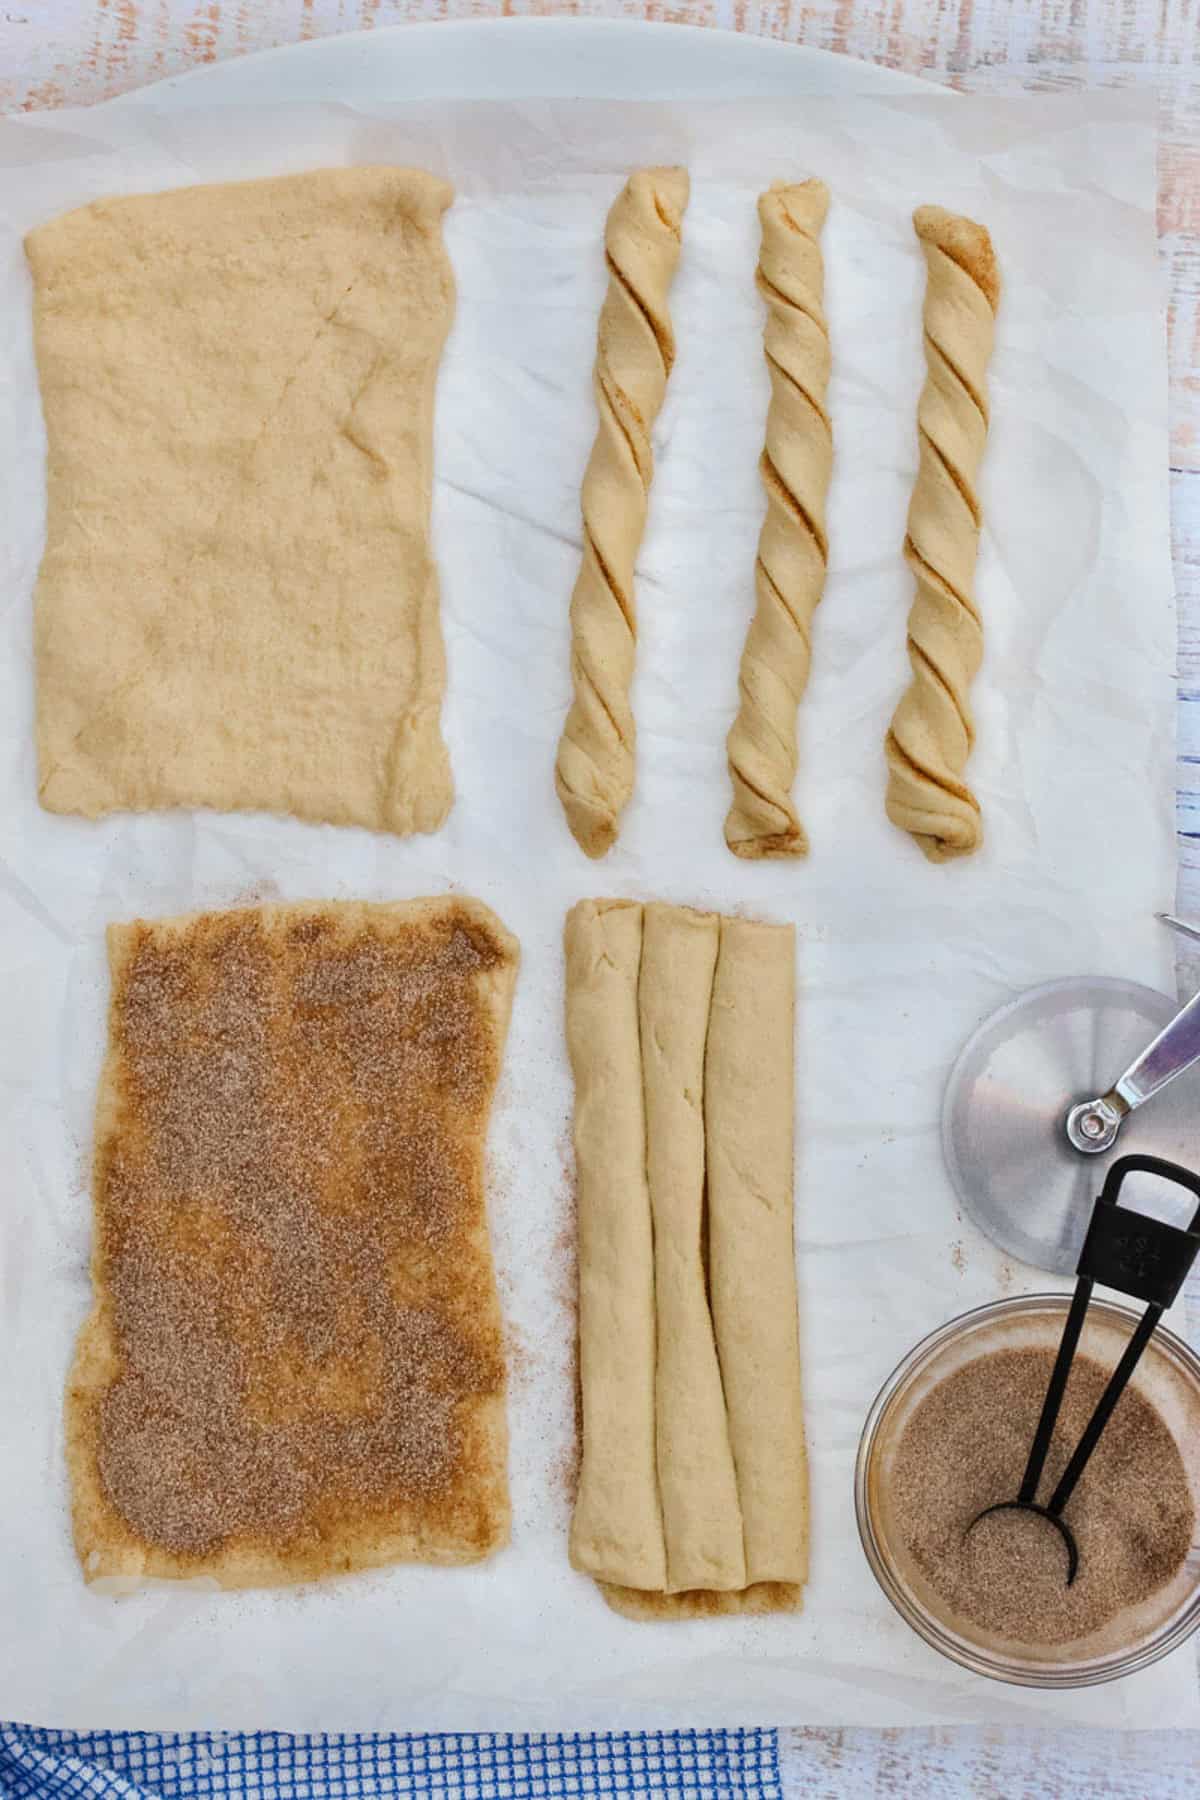 process of filling churros with cinnamon sugar to make Baked Churros